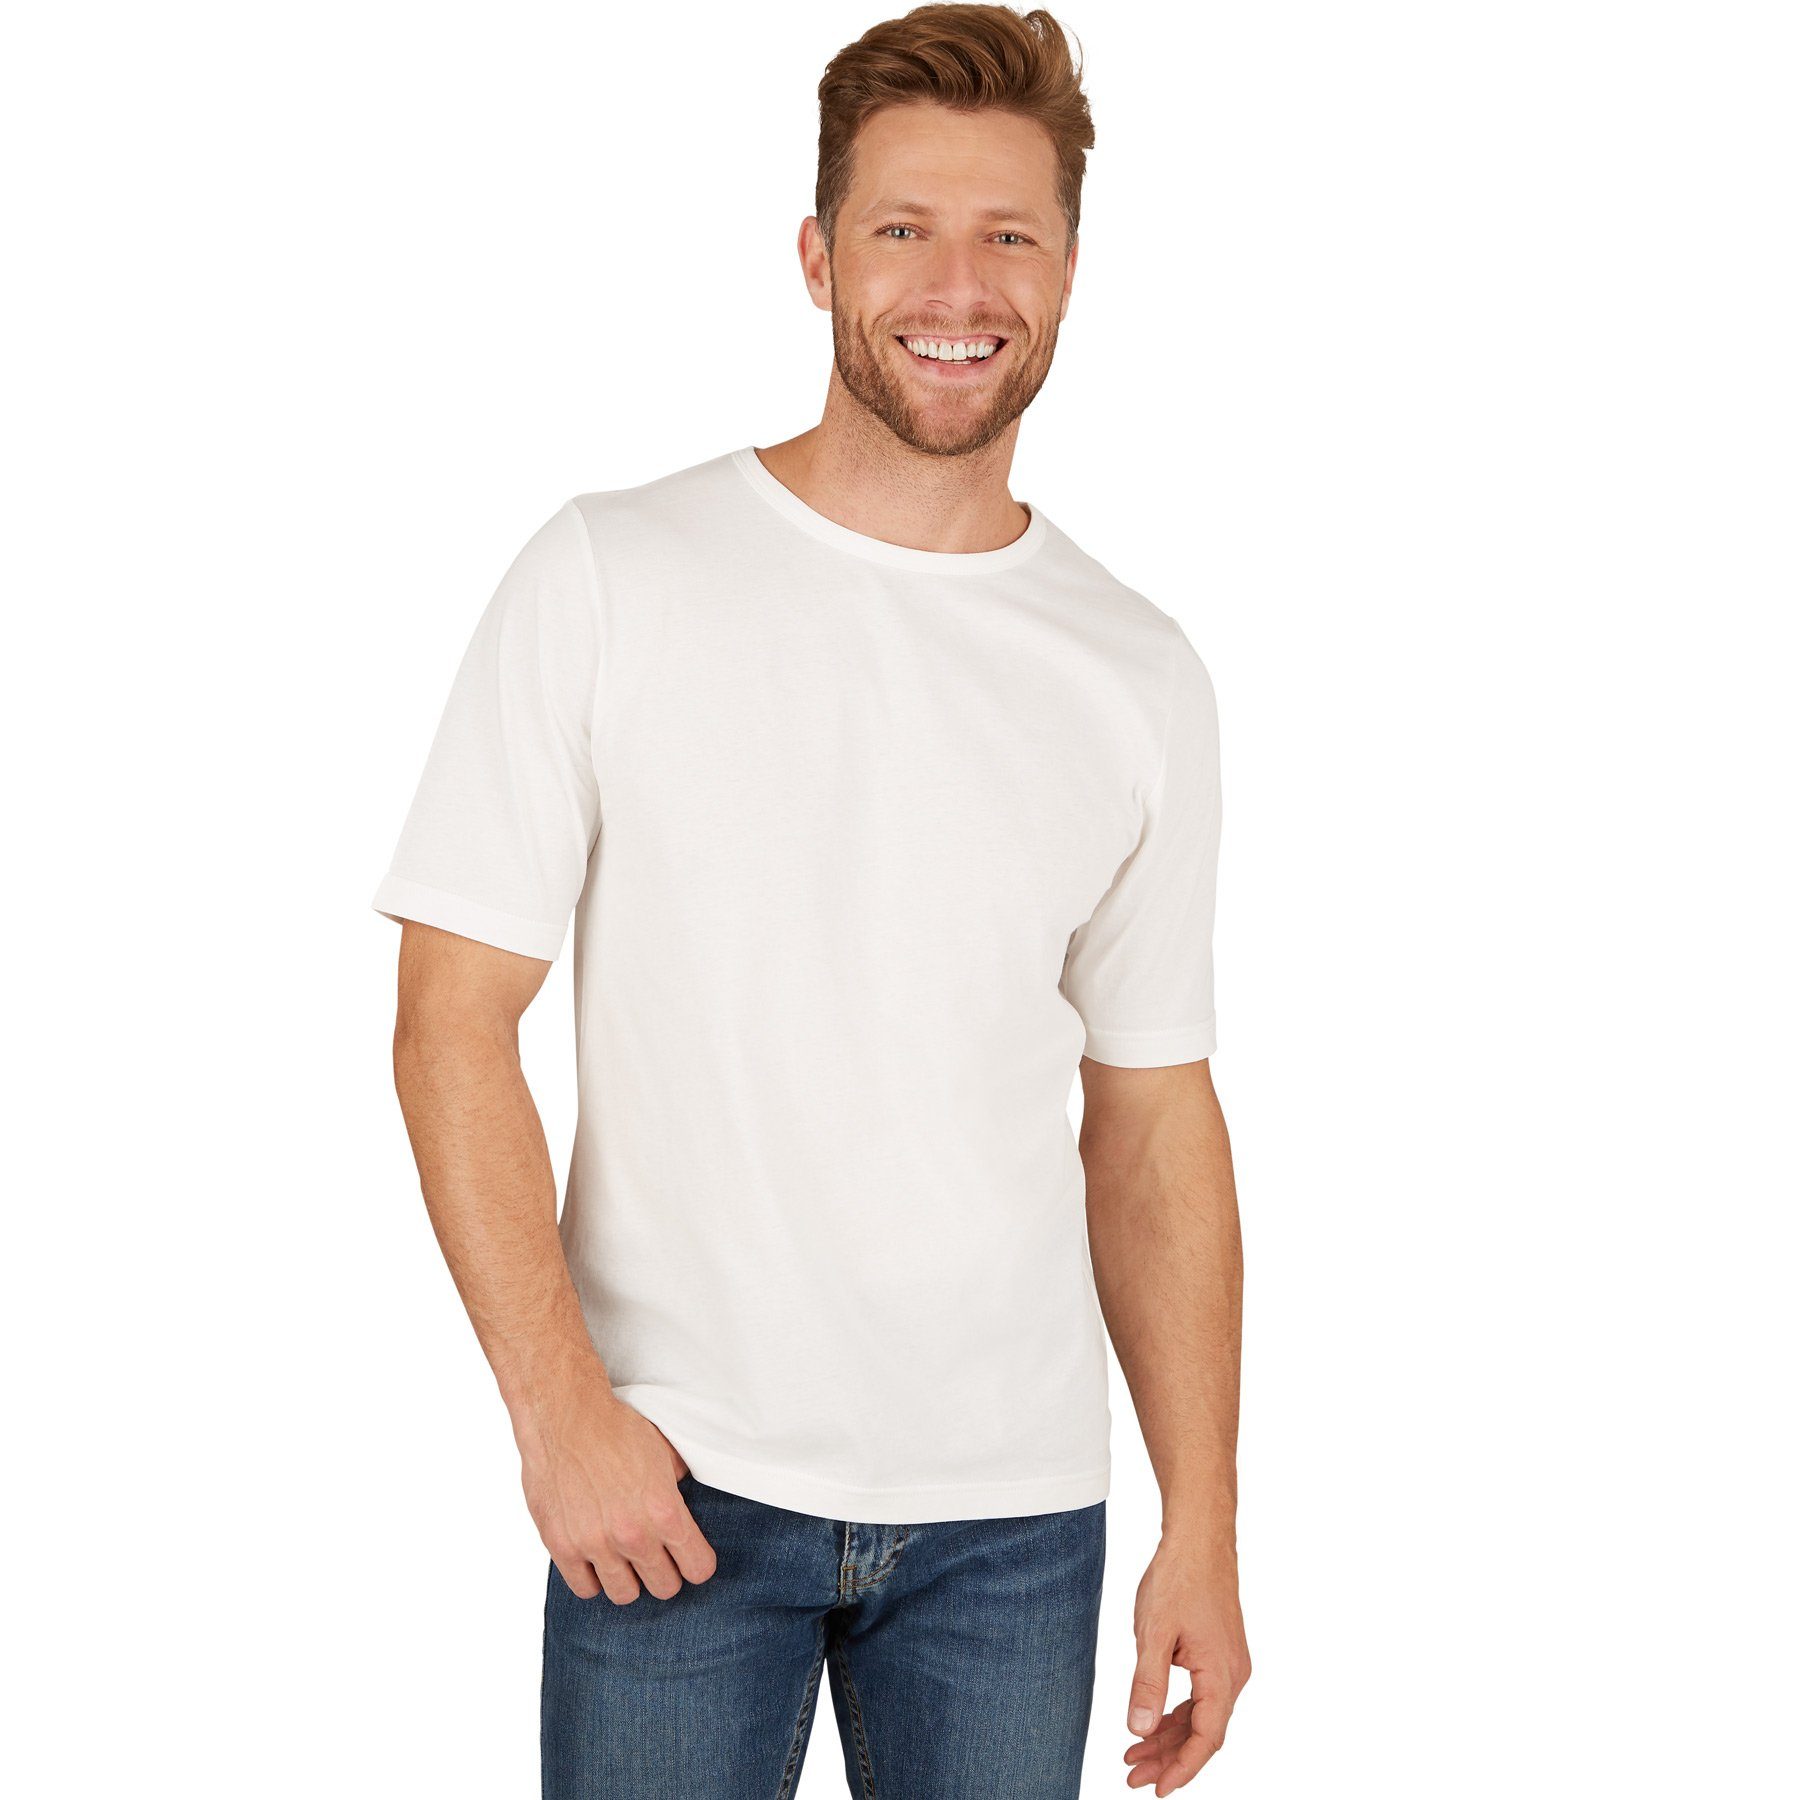 dressforfun T-Shirt Herren T-Shirt mit Rundhals-Ausschnitt Rundhals weiß